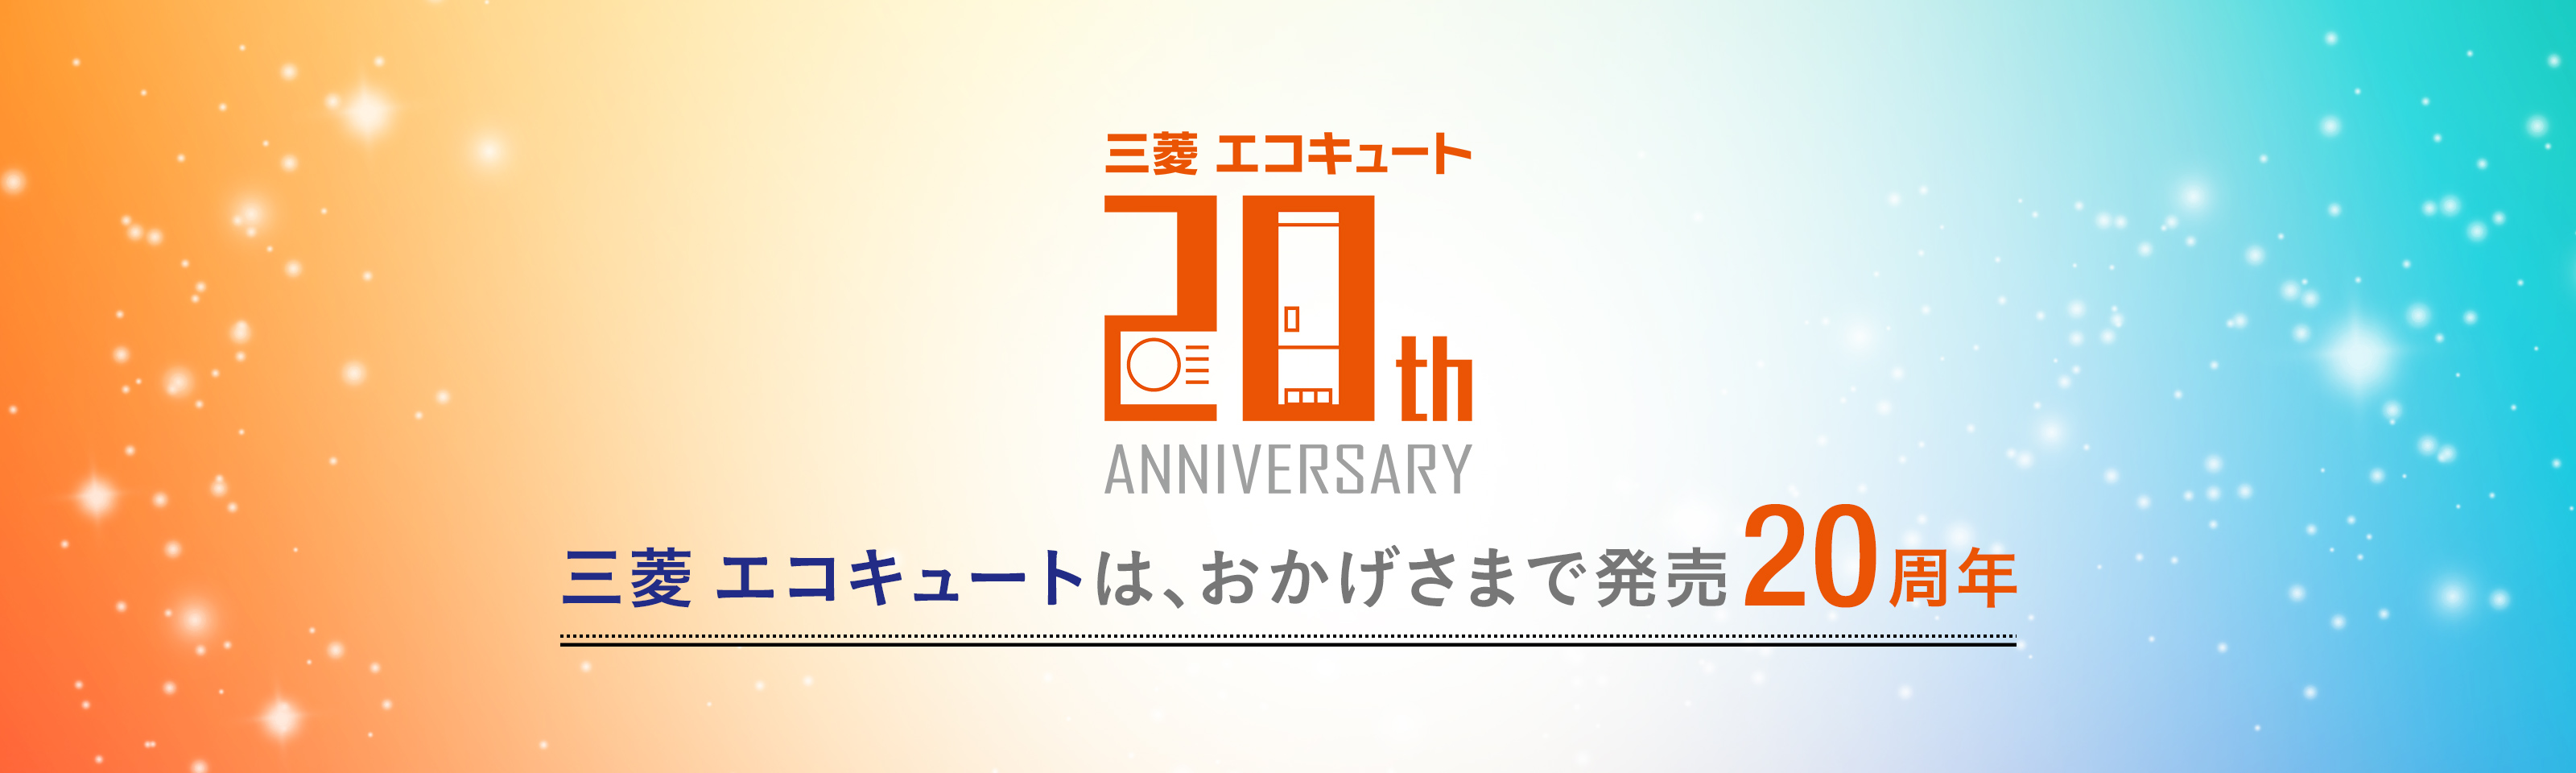 三菱 エコキュートは、おかげさまで発売20周年